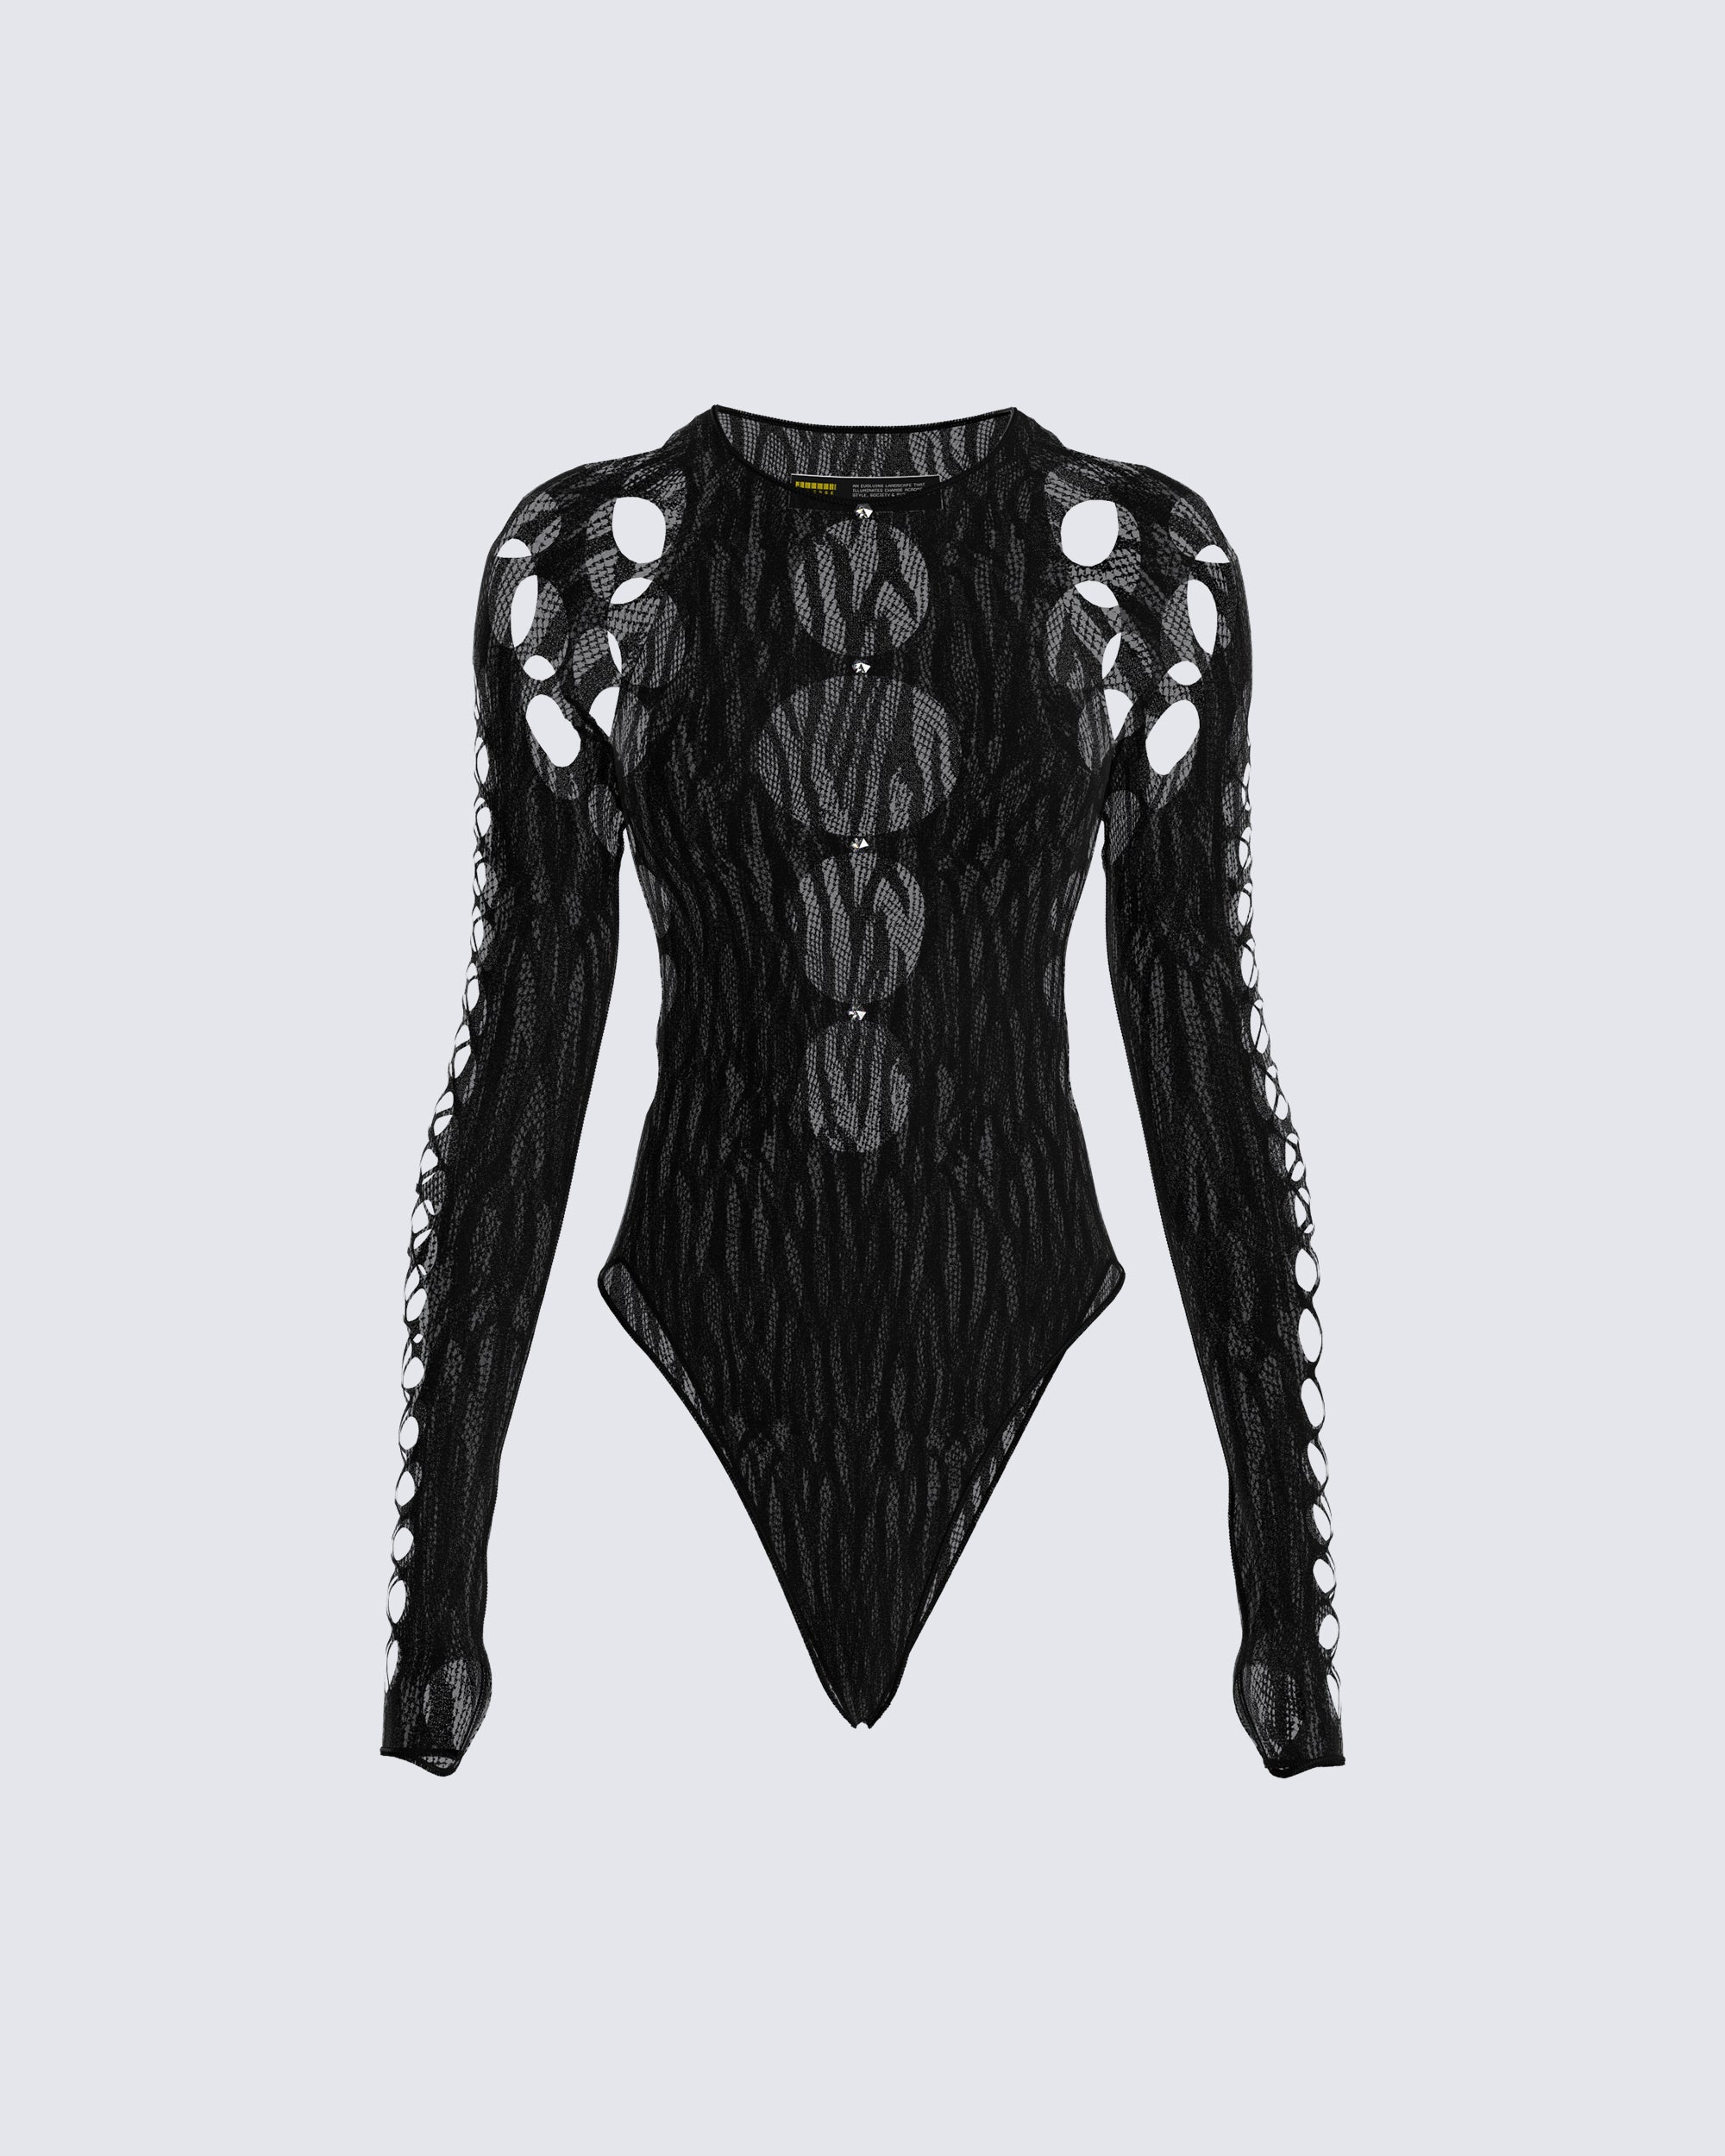 Fabletics Black Tropez Mesh Panel Cut-Out Strappy Racerback Dress XS  Retails $90